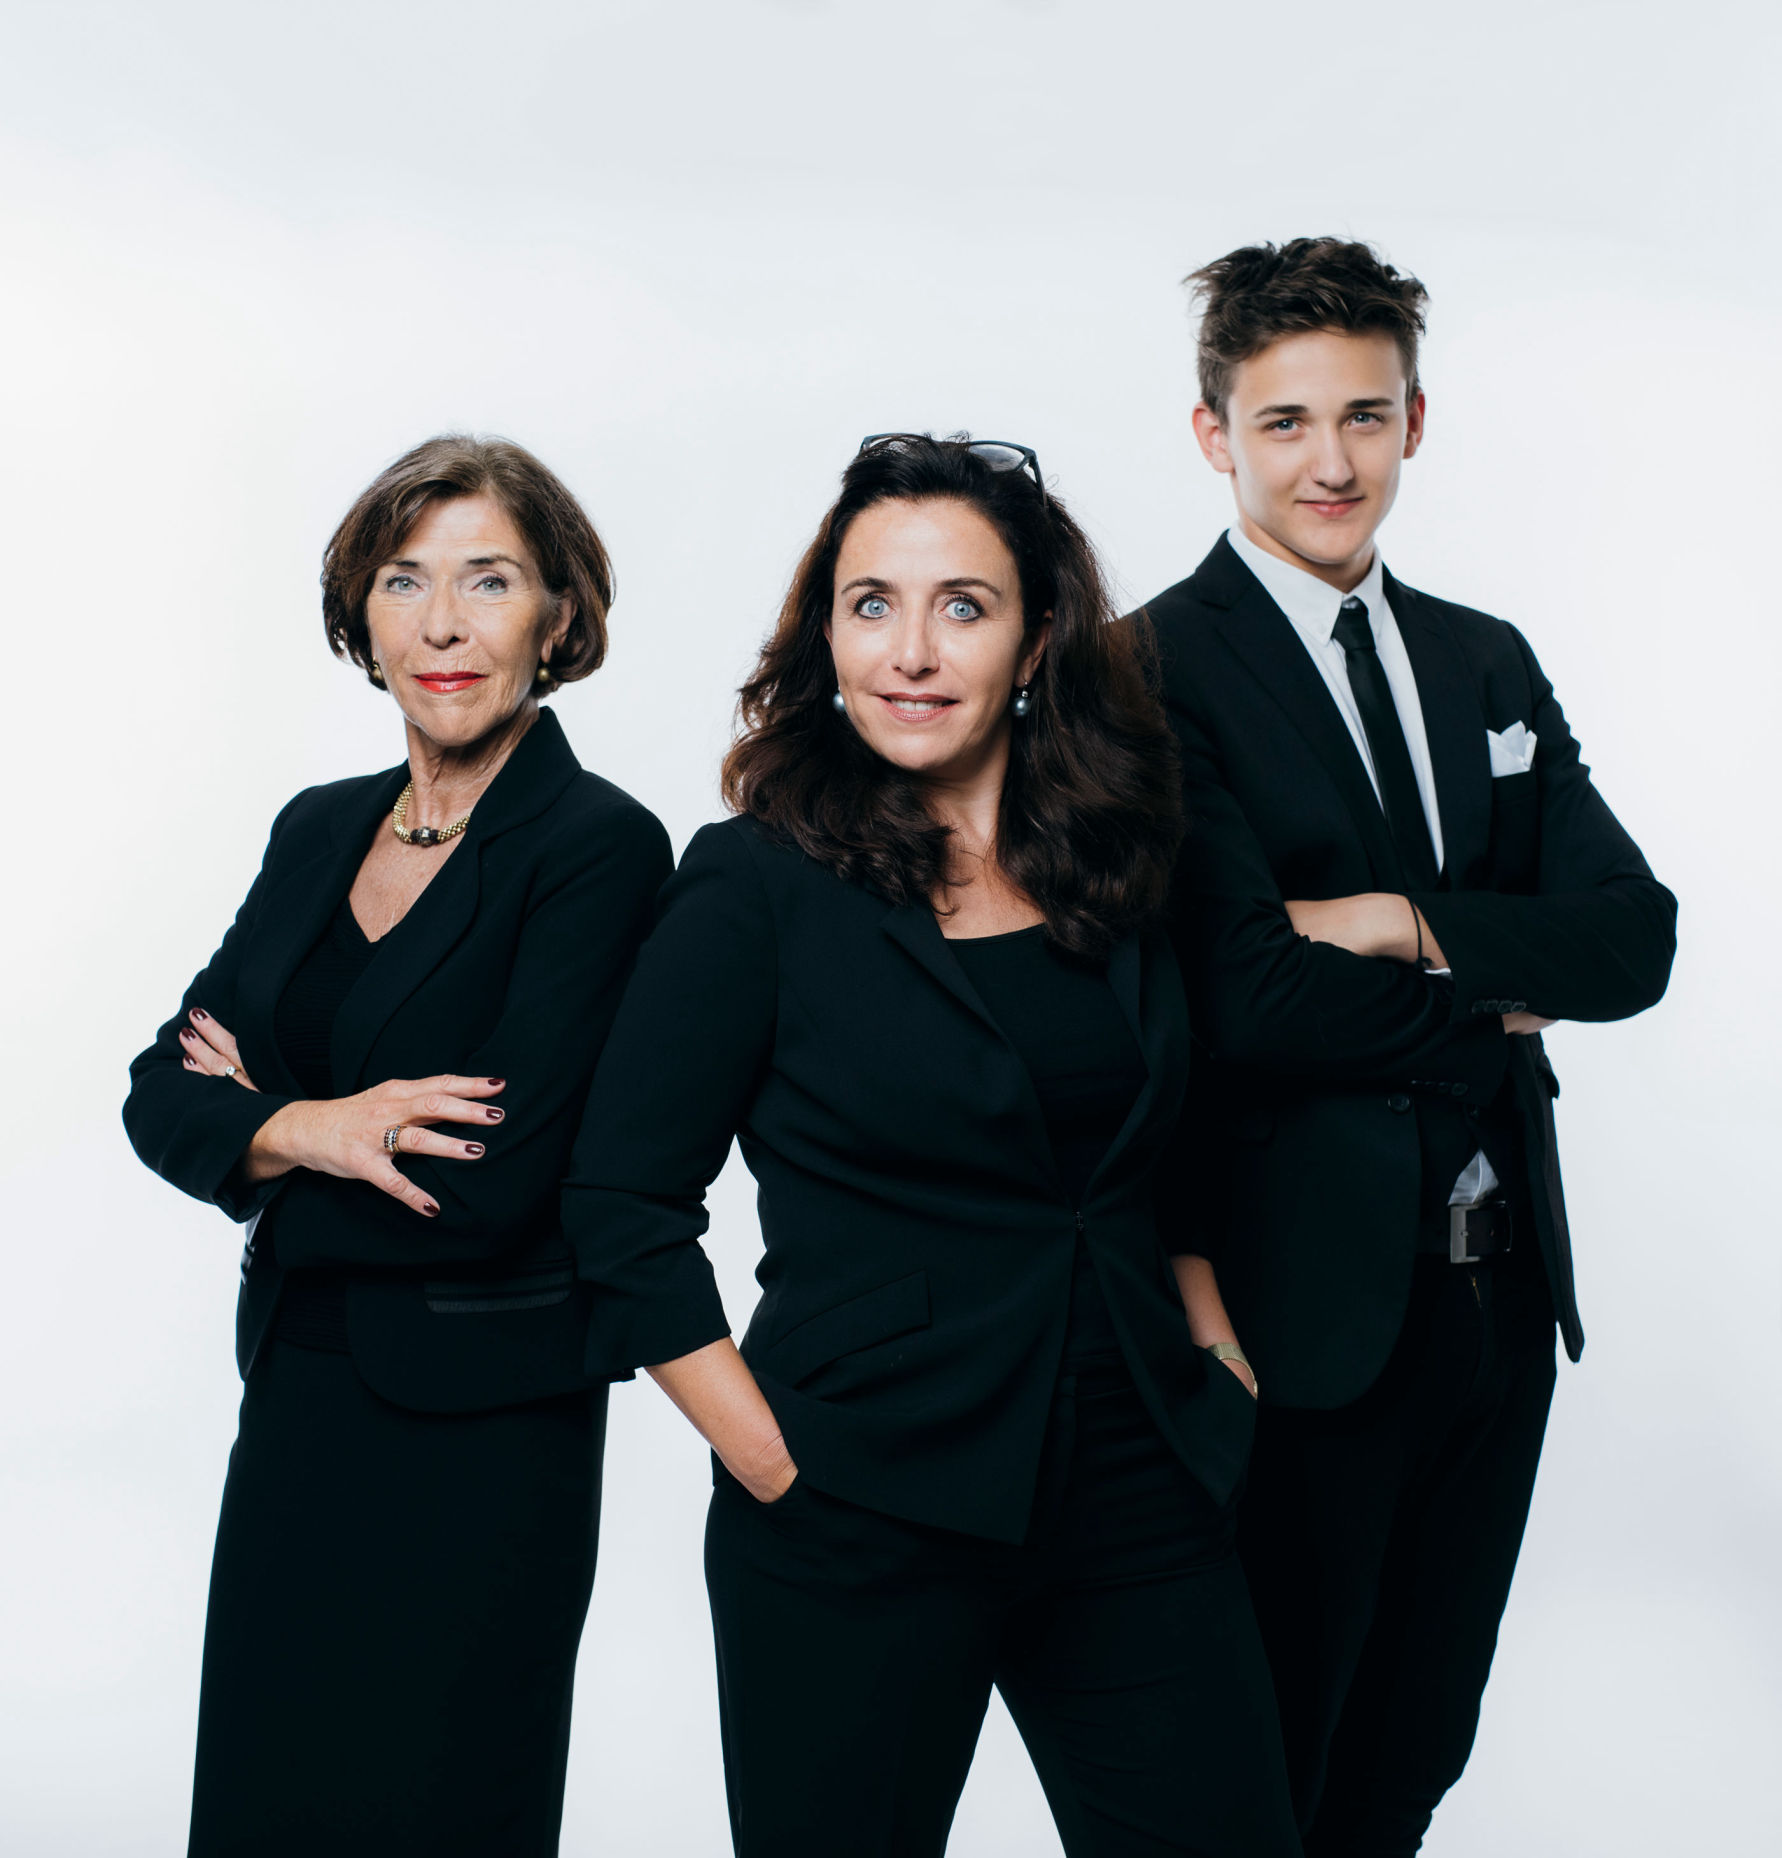 Gaube Familienunternehmen: Gründerin Elisabeth Gaube, Geschäftsführerin Martina Silly-Gaube und Nachwuchstalent Martin Silly